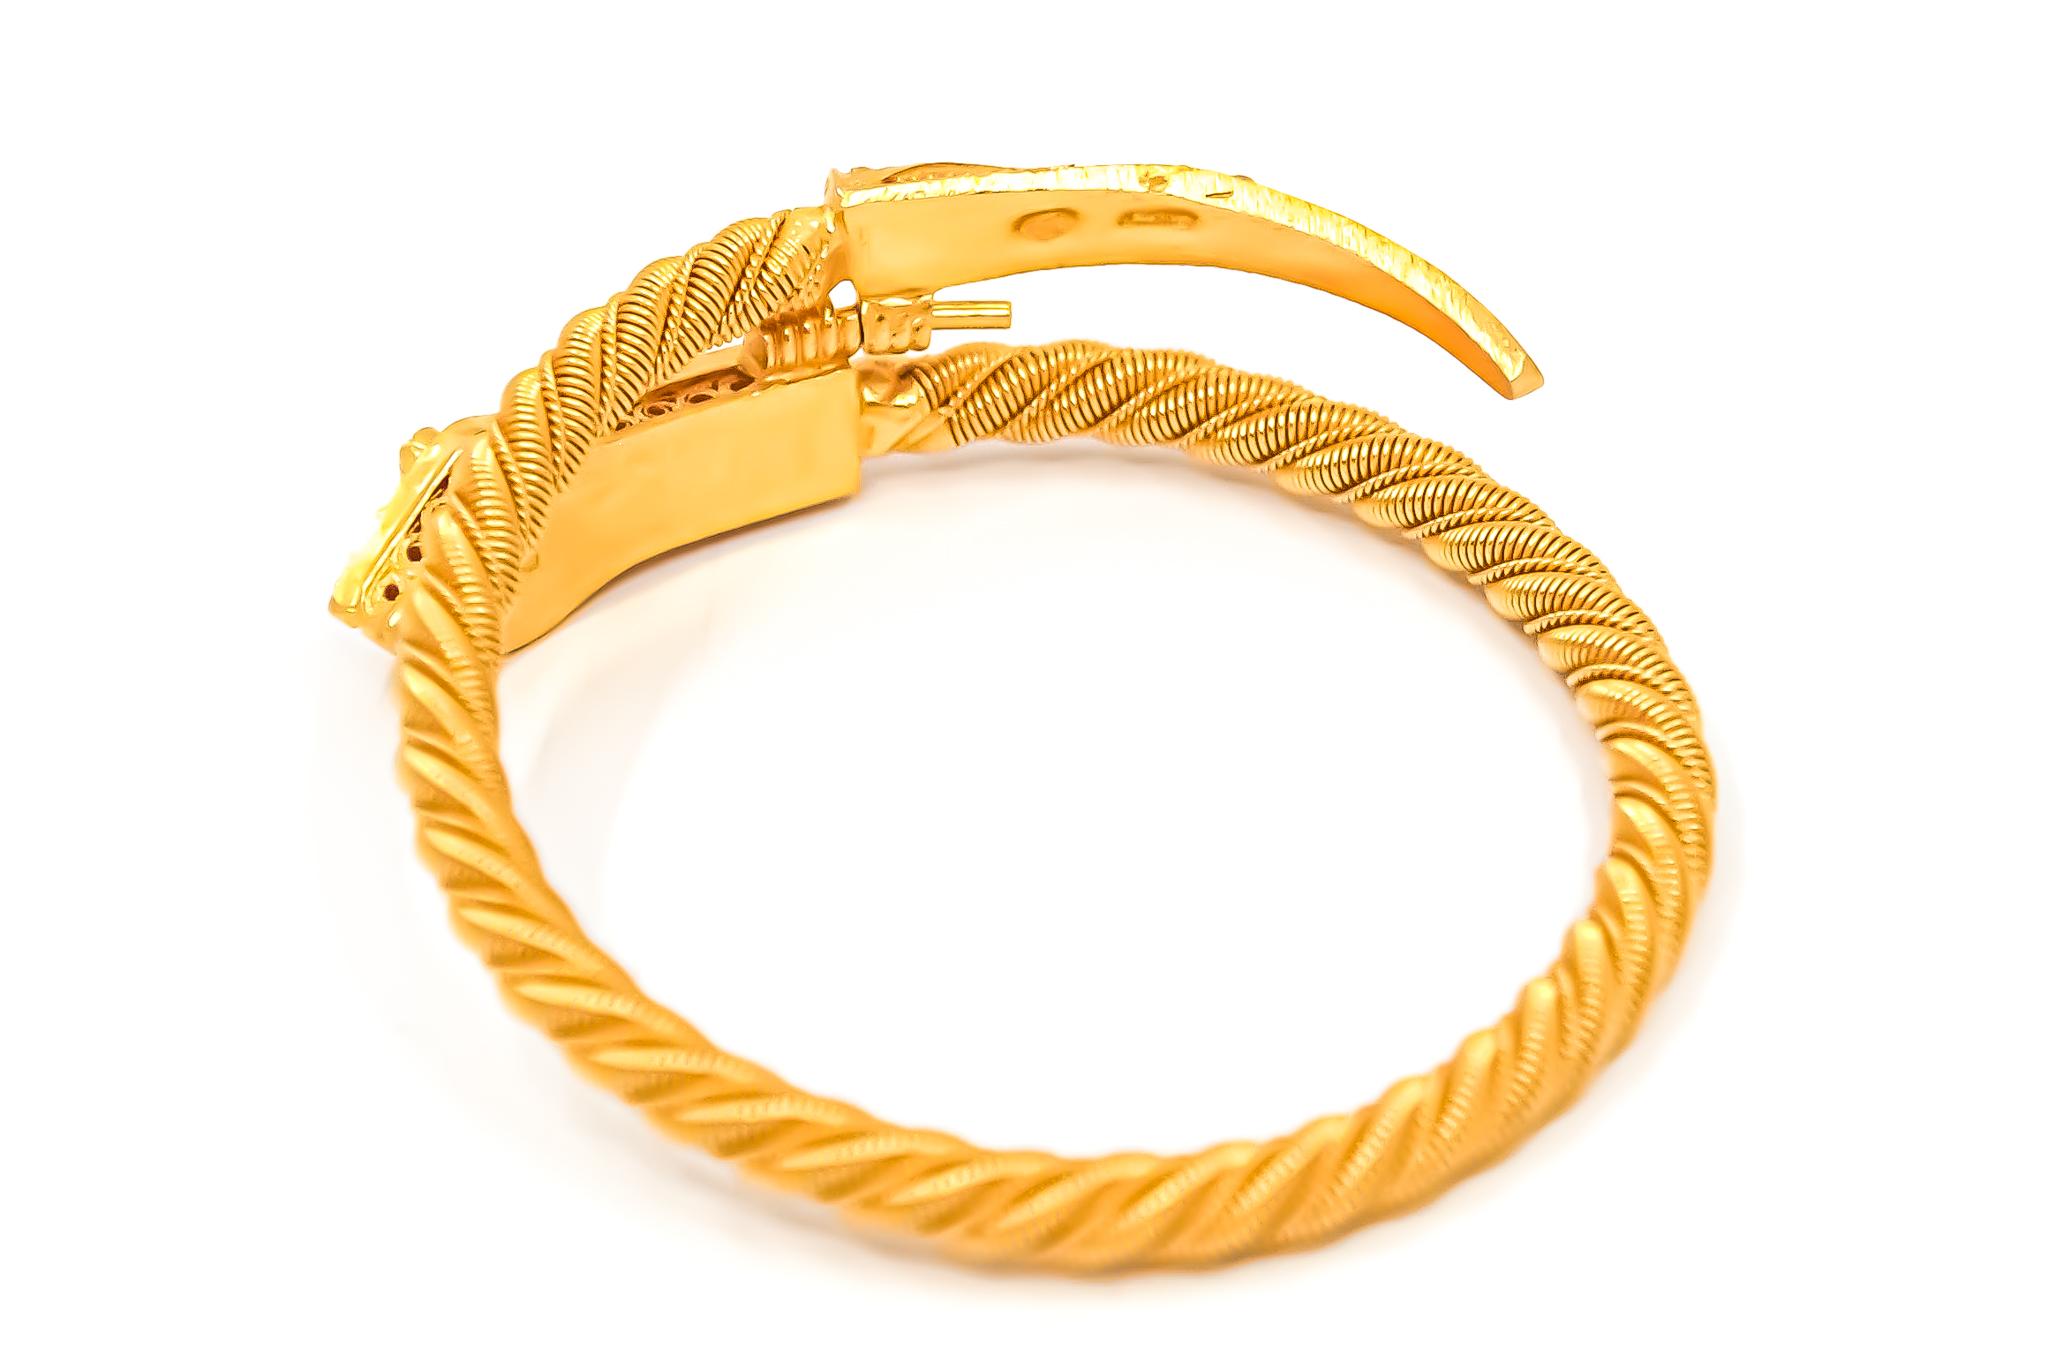 Bracelet manchette vintage Serpenti en or jaune massif 21 carats datant du début des années 1960. Les yeux du serpenti sont des pierres semi-précieuses à taille ronde. Cette pièce a été portée en très peu d'occasions et a été conservée intacte dans